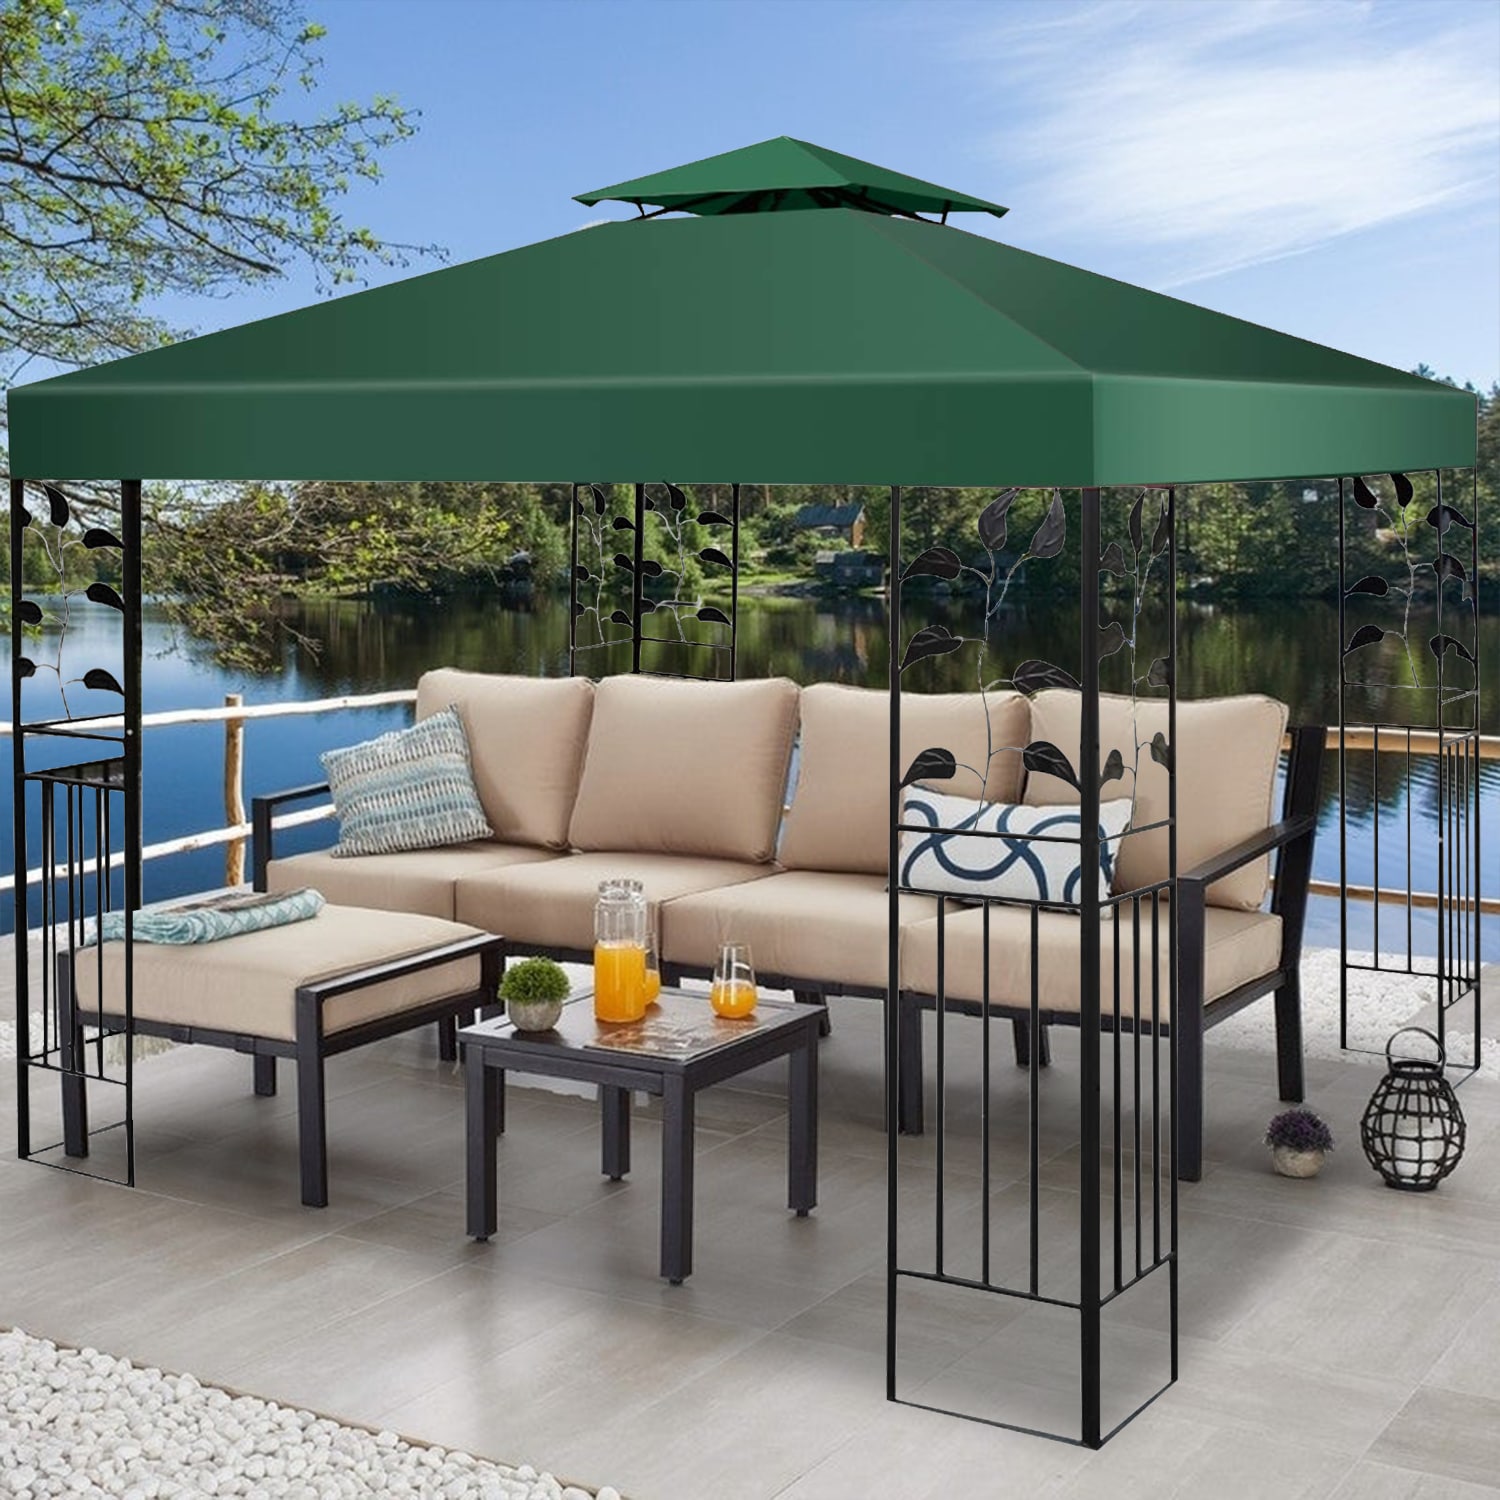 Gazebo Top Roof Sun Umbrella Surface Canopy Cover Replacement Garden Parasol 